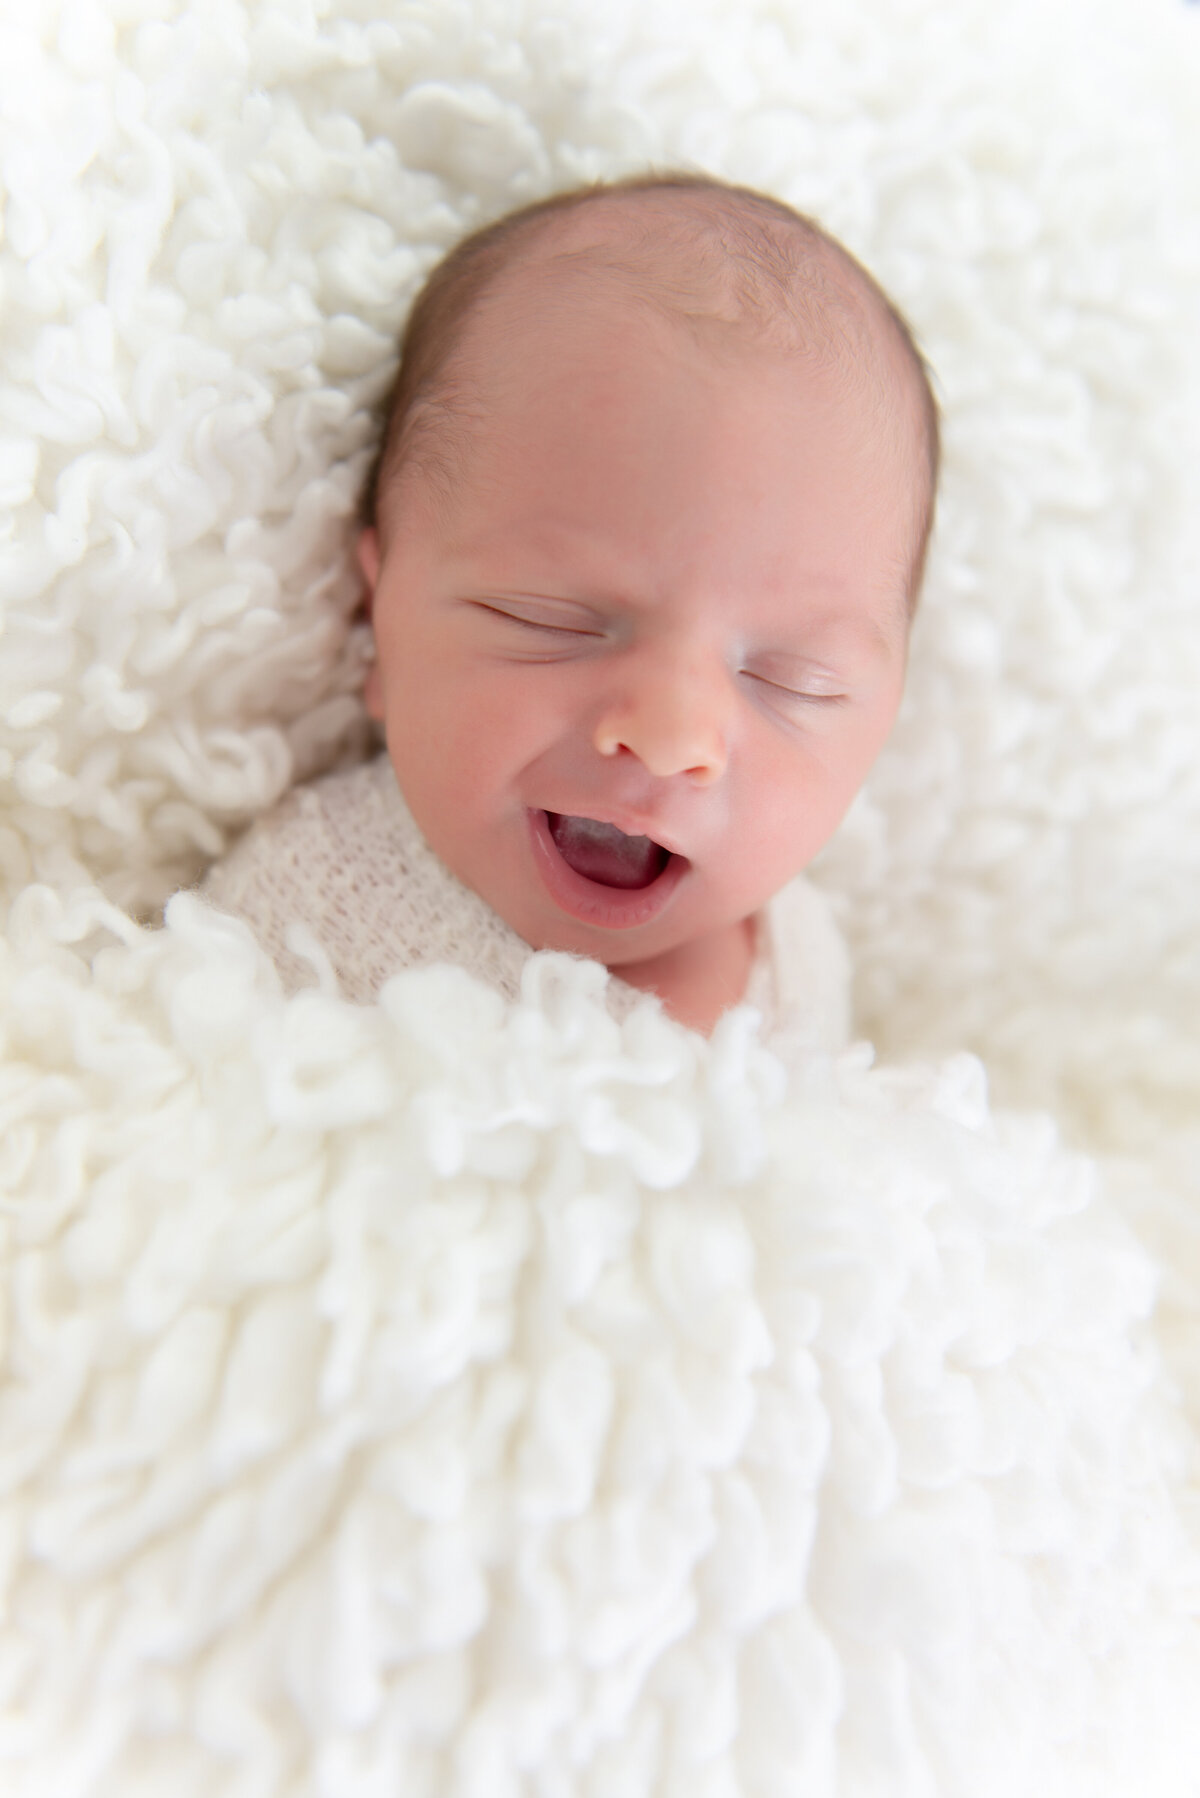 Newborn baby boy smiling in Kennebunk Maine